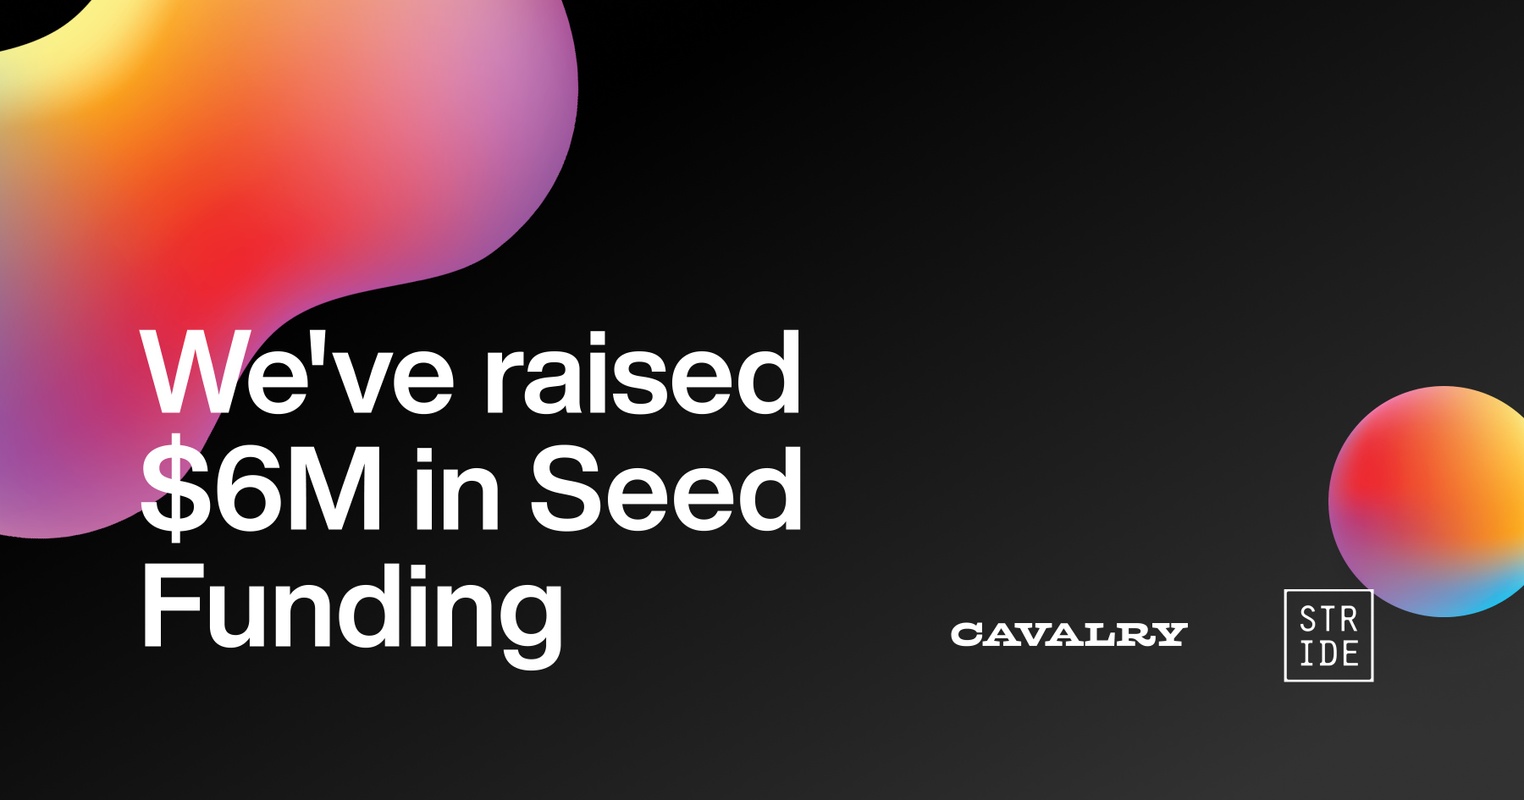 We've raised $6M in Seed Funding